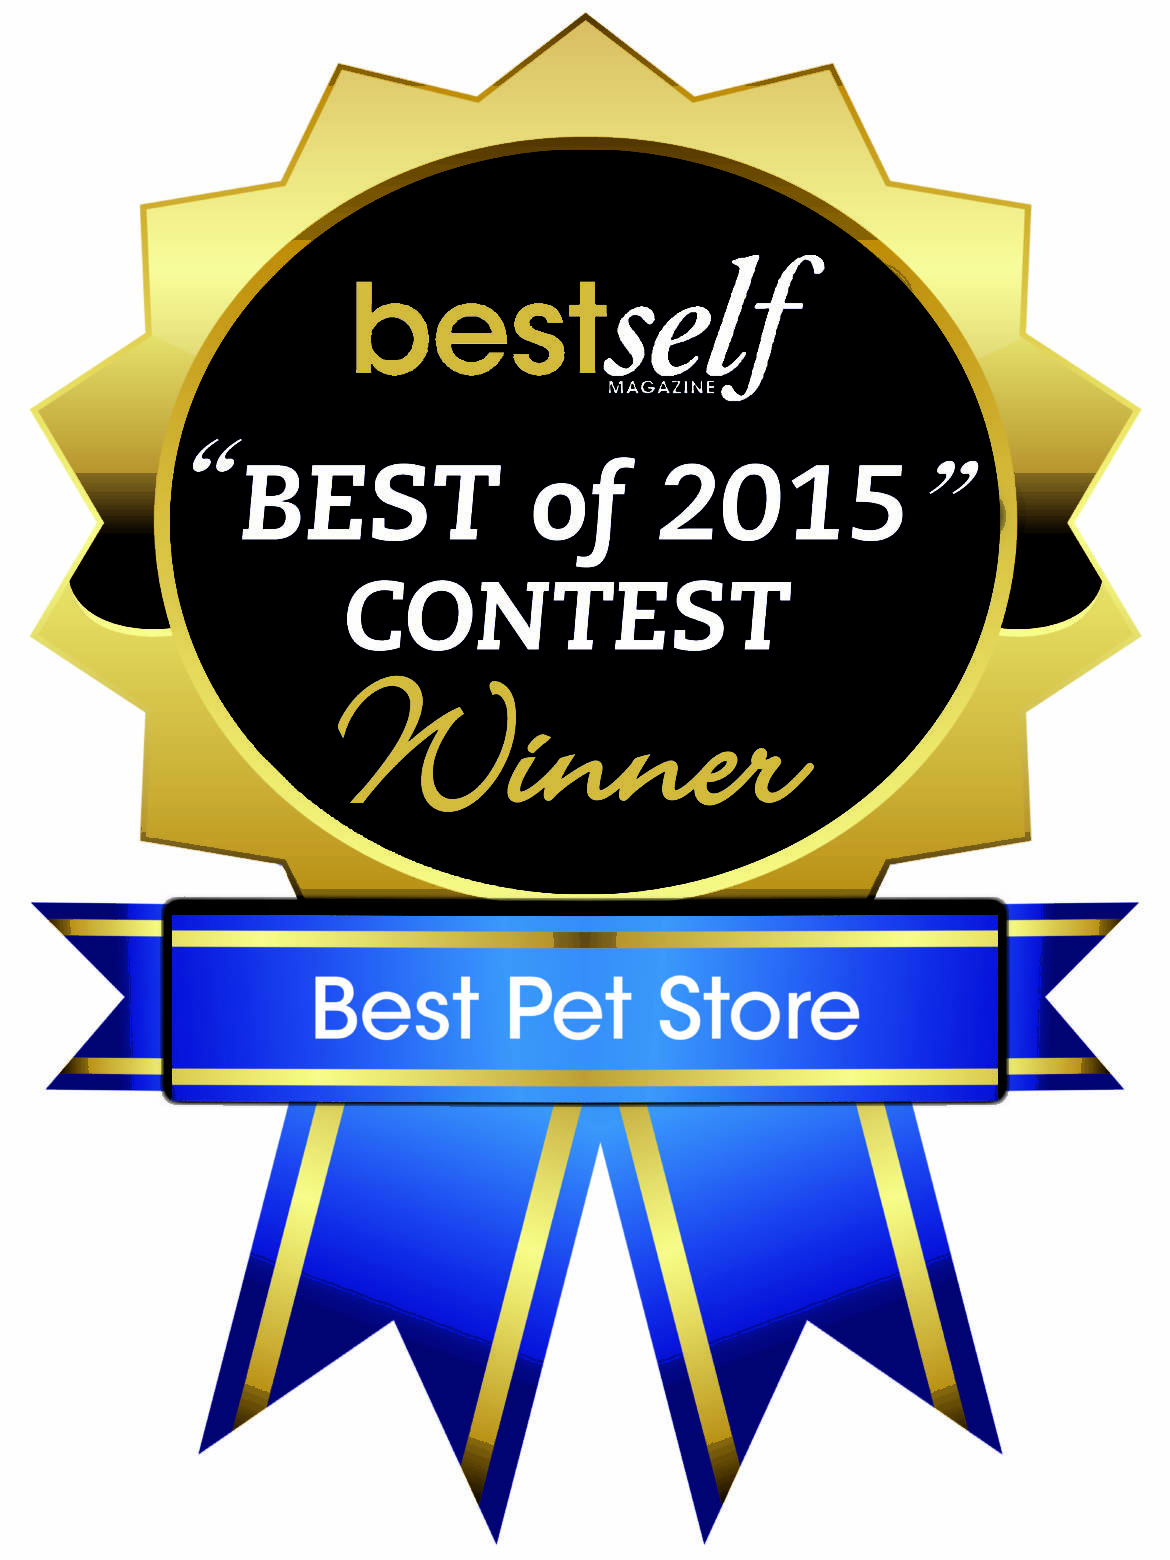 bestself_contest_winner_2015.jpg